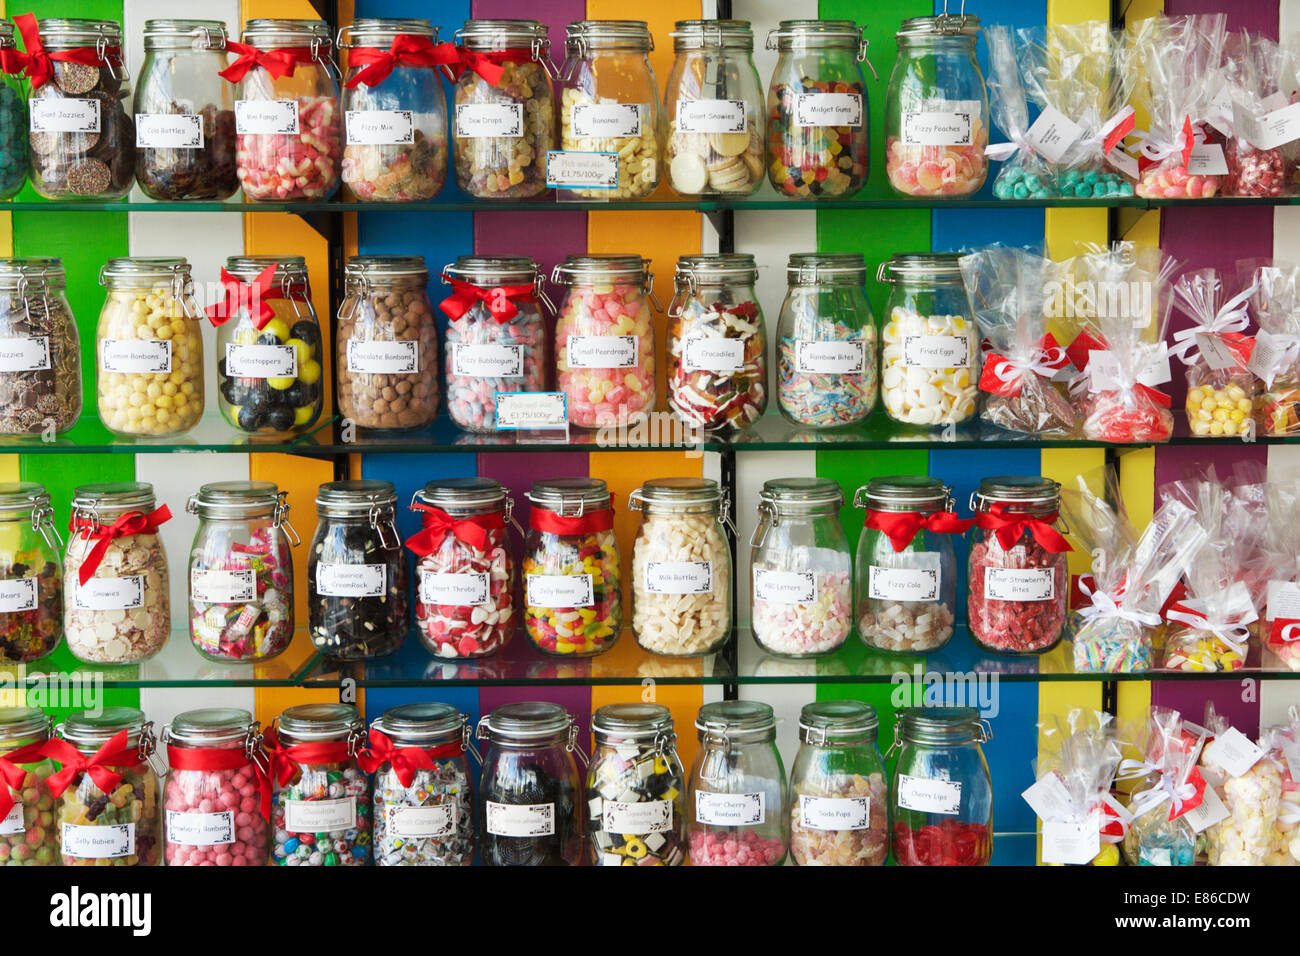 Choisissez et mélangez : Pots de bonbons à l'ancienne British traditionnel doux, Londres, Angleterre, Royaume-Uni. Candy jar. Banque D'Images